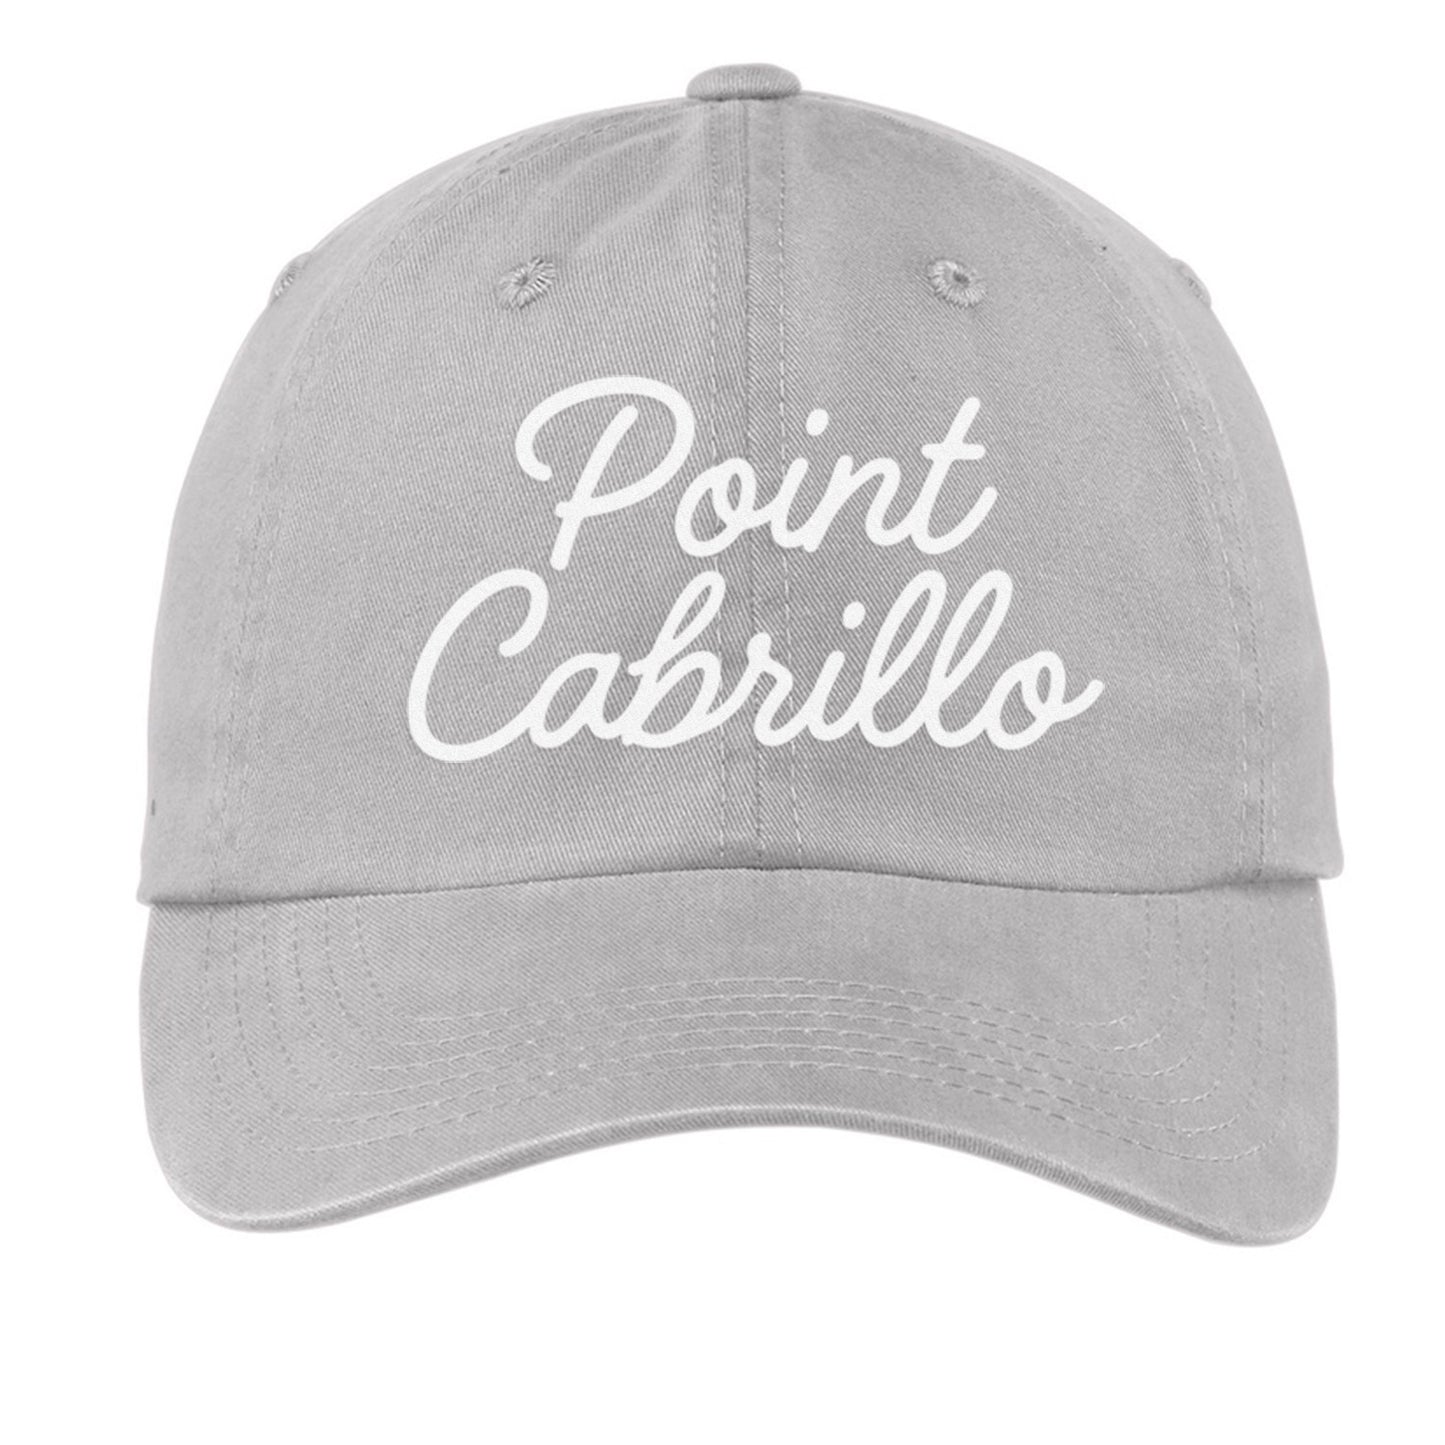 Point Cabrillo Cursive Baseball Cap